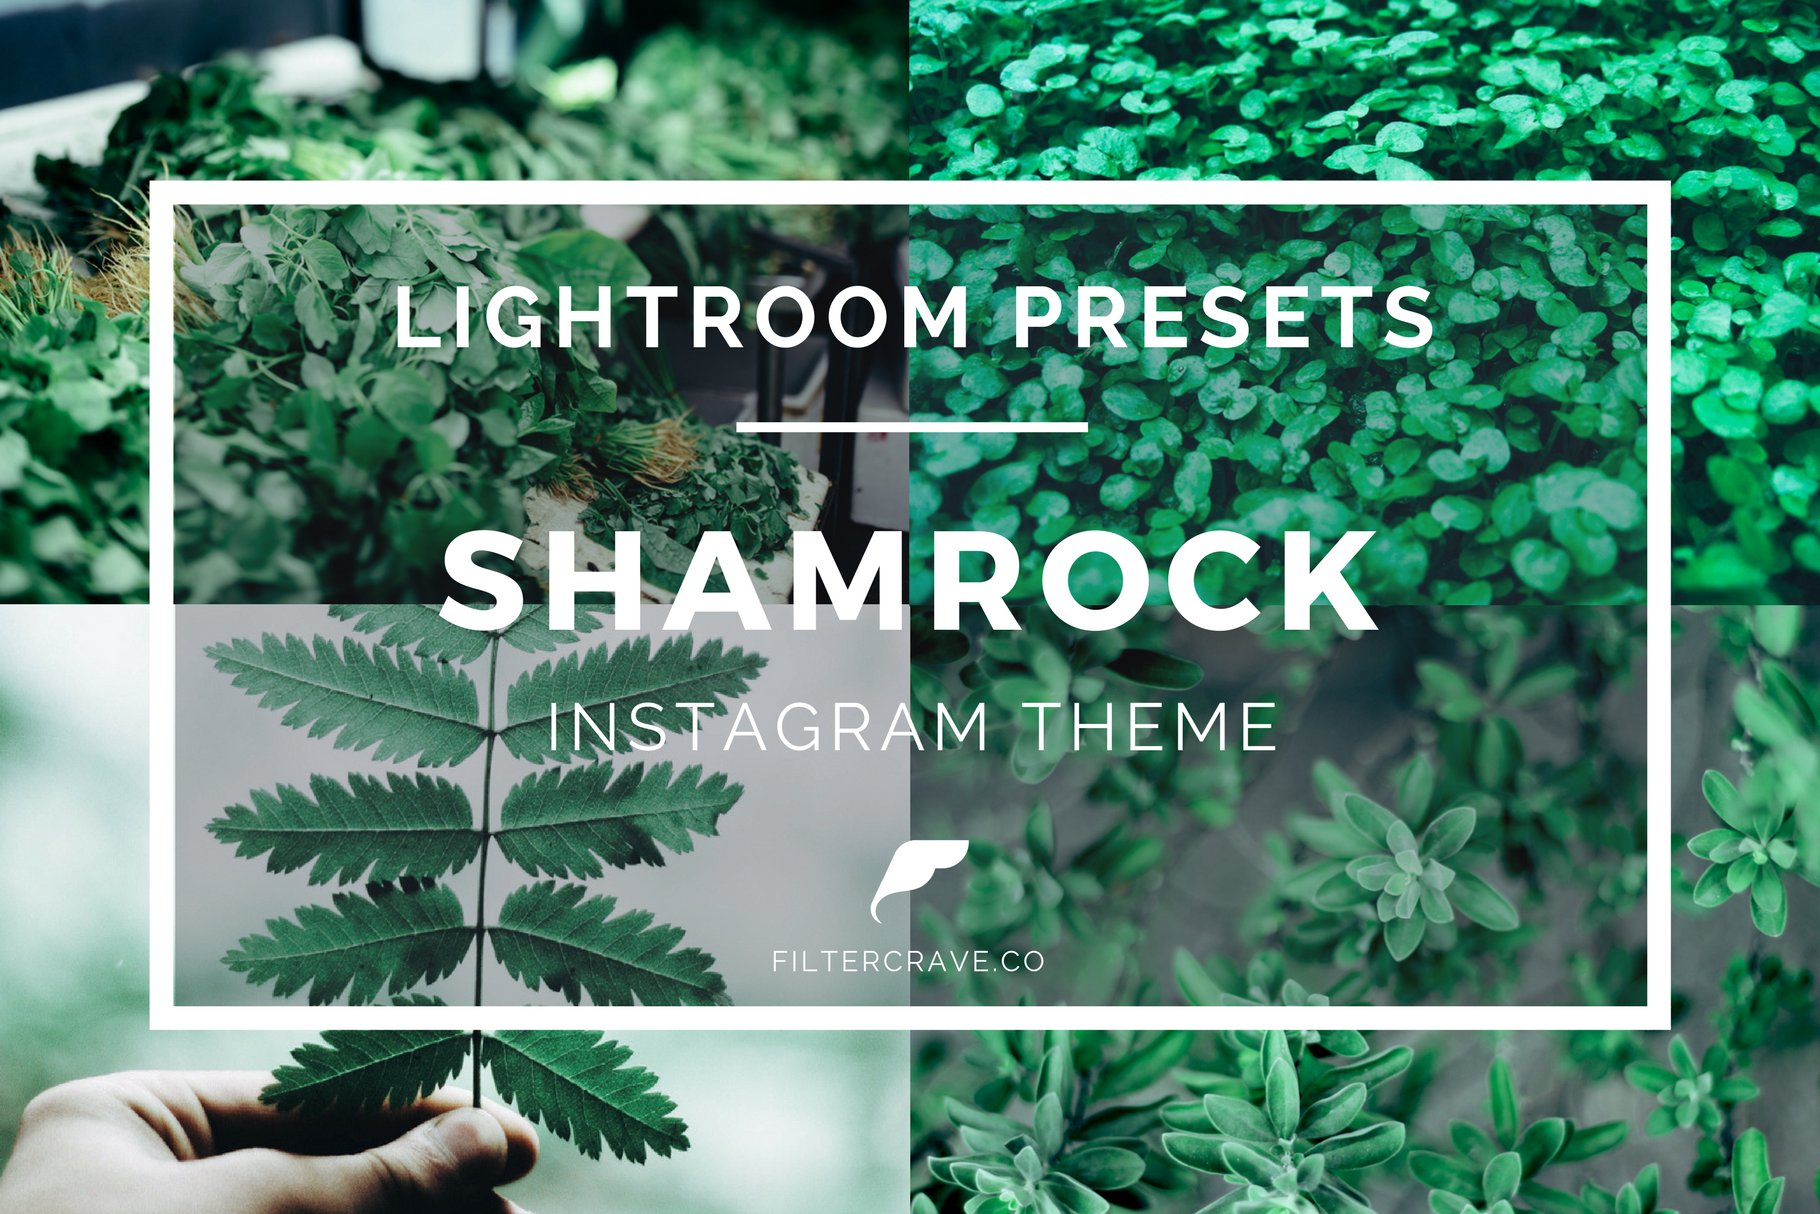 shamrock instagram theme lightroom presets filtercrave cover graphic 28229 43